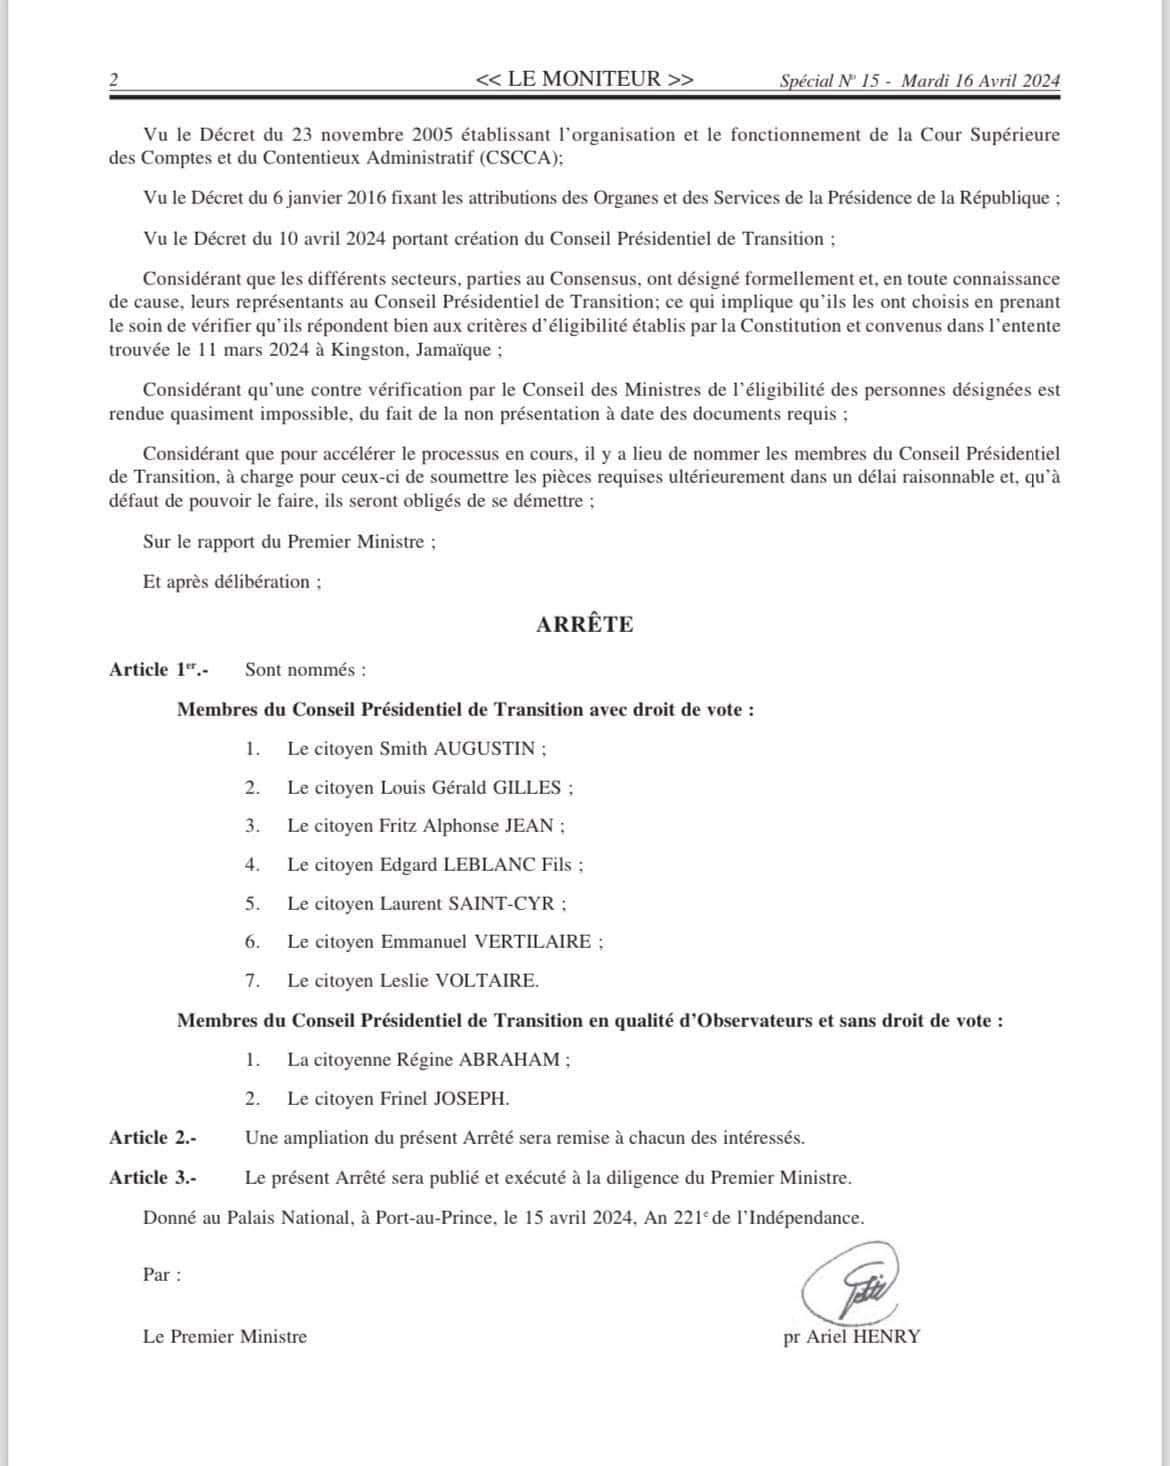 Decreto que establece el Consejo Presidencial de Haití.